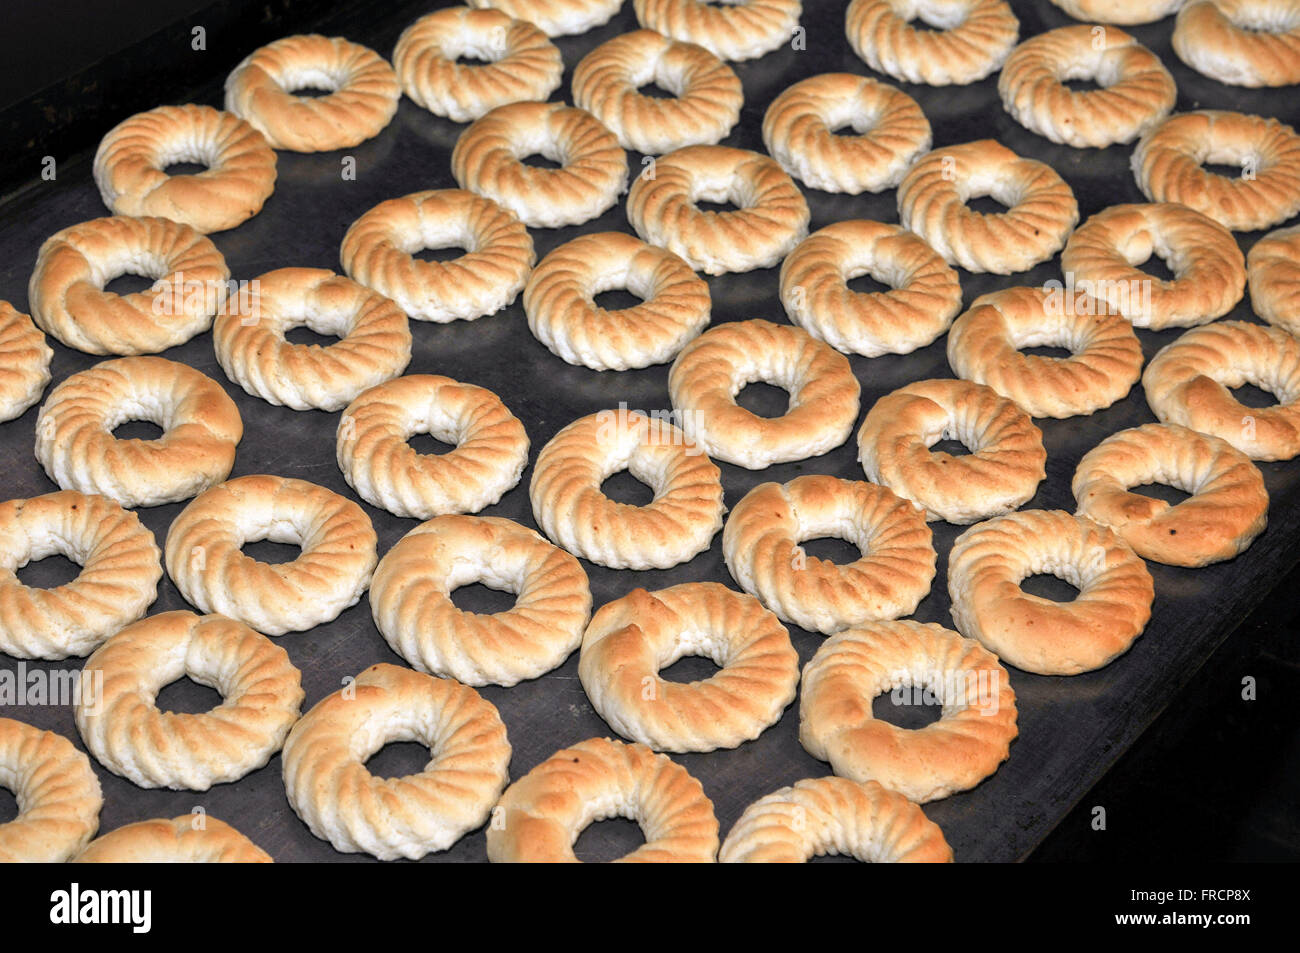 Des biscuits sur la plaque - Stocker les produits d'artisanat en milieu rural Banque D'Images